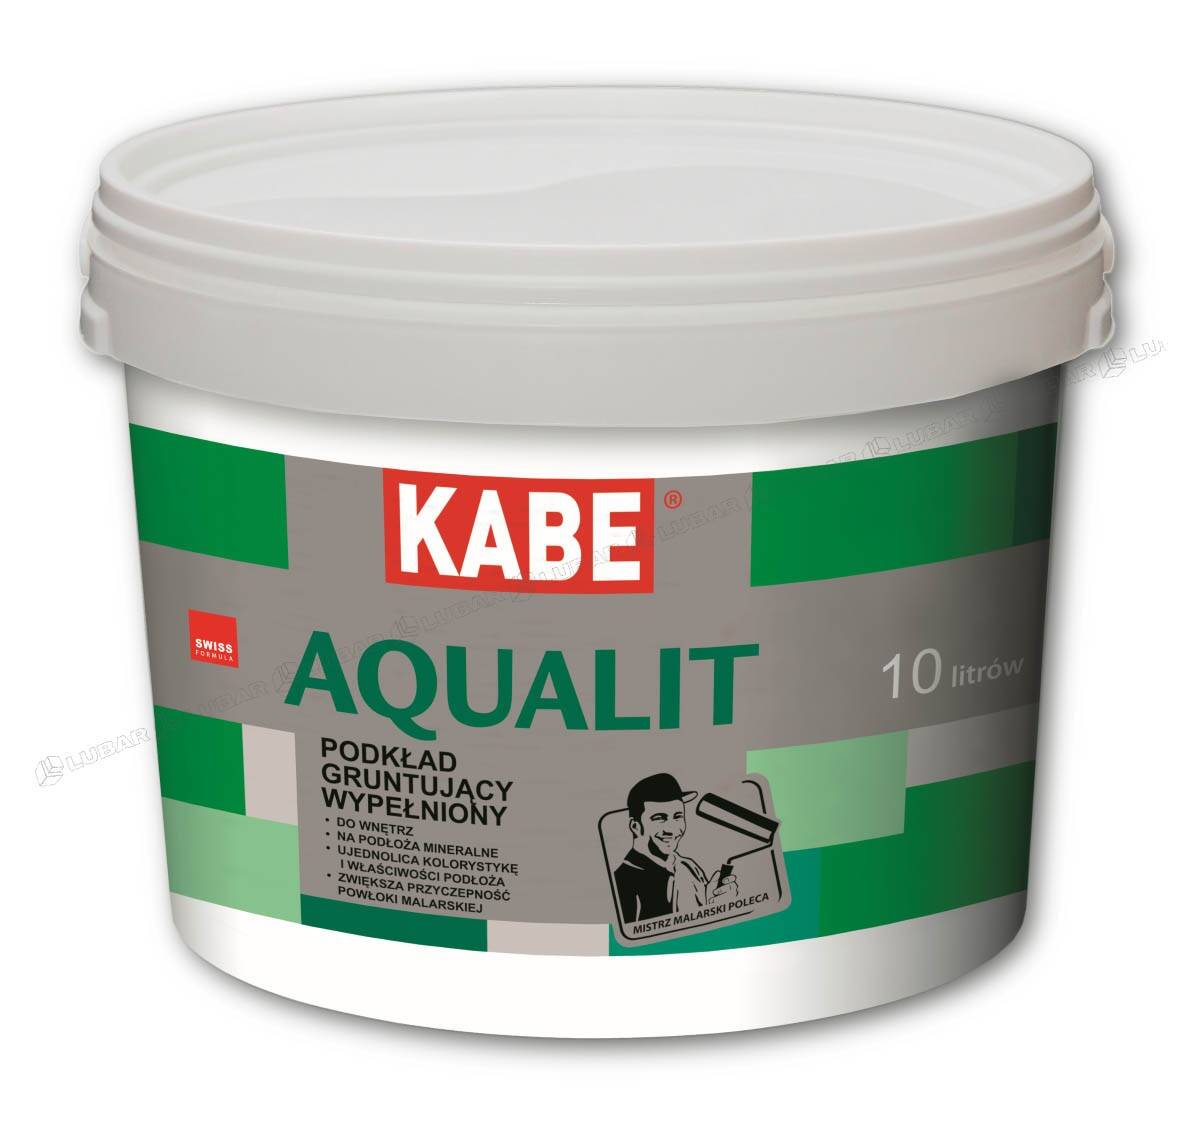 Podkład gruntujący pod farby Kabe Aqualit 10 l KABE